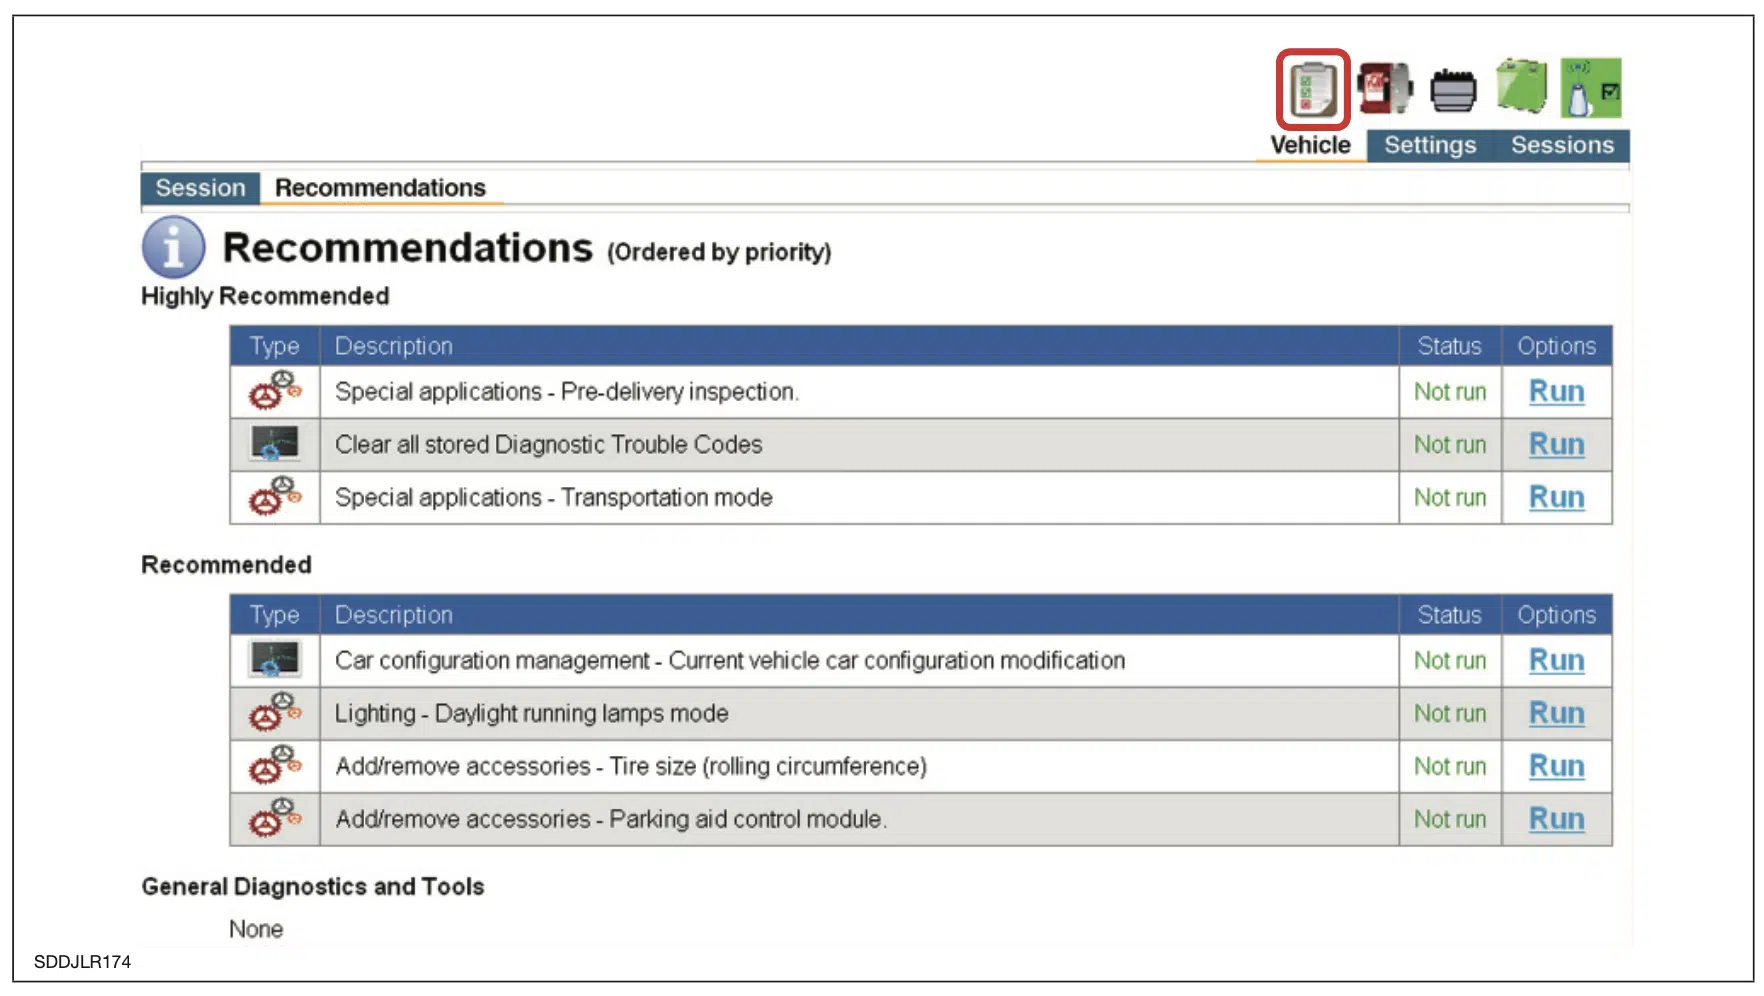 Zrzut ekranu sesji oprogramowania JLR SDD dla zalecanych działań po zgłoszeniu objawów pojazdu